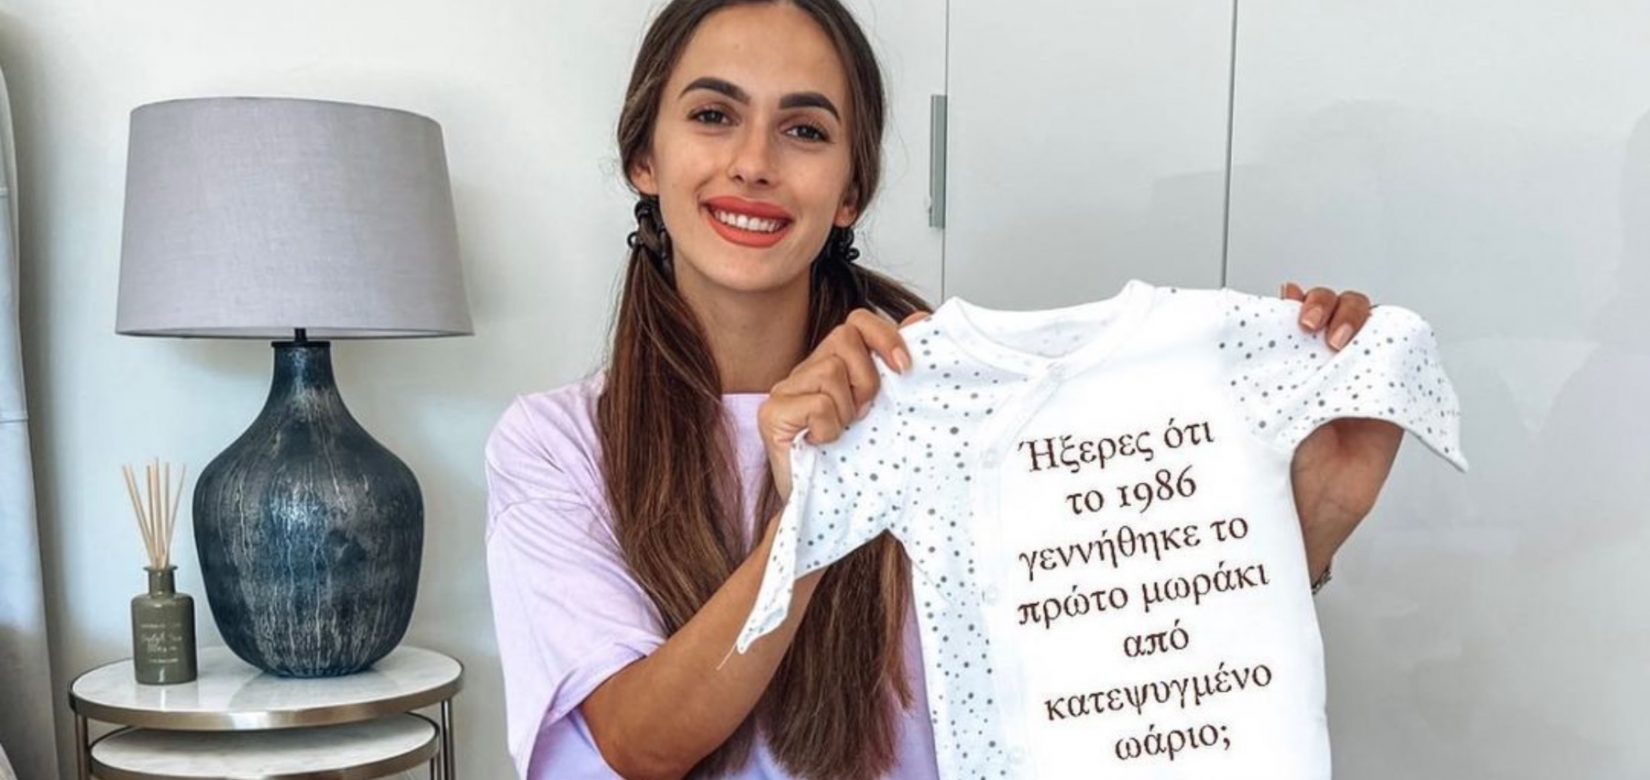 Τέα Πρέλεβιτς: Το νέο μήνυμα μετά την απόφασή της να καταψύξει τα ωάριά της